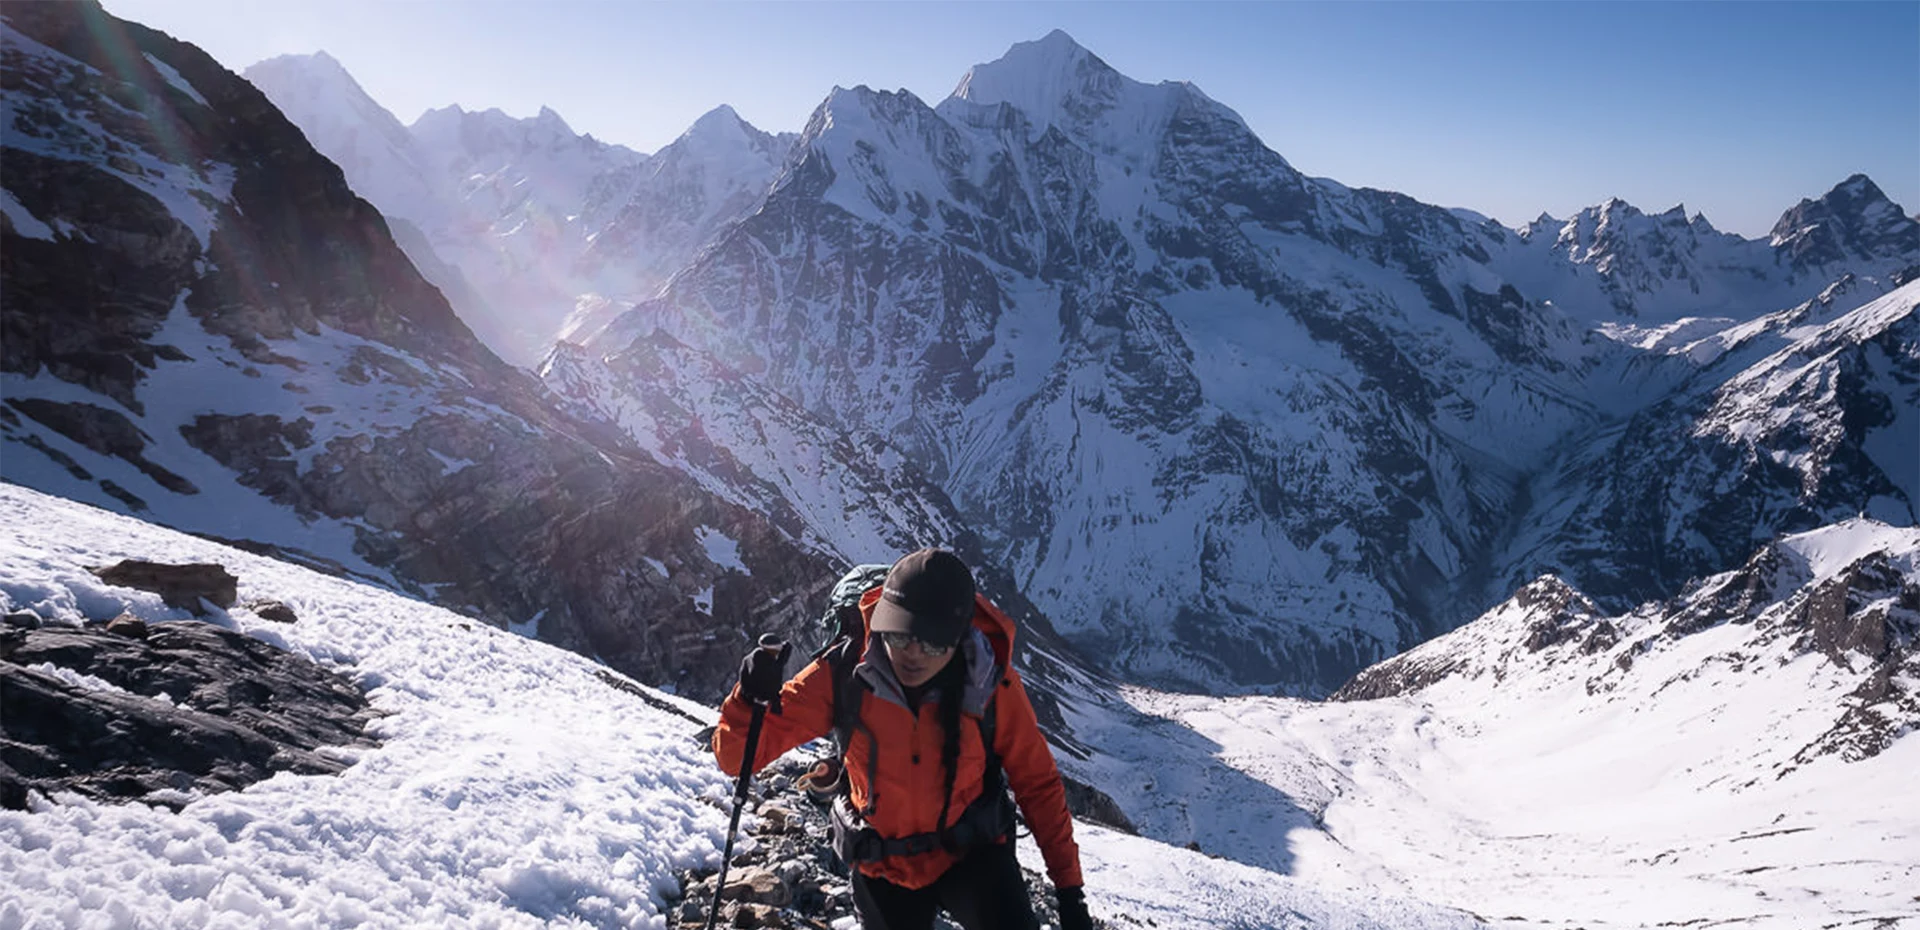 Background Image of Yala Peak Climbing with Langtang Valley Trek